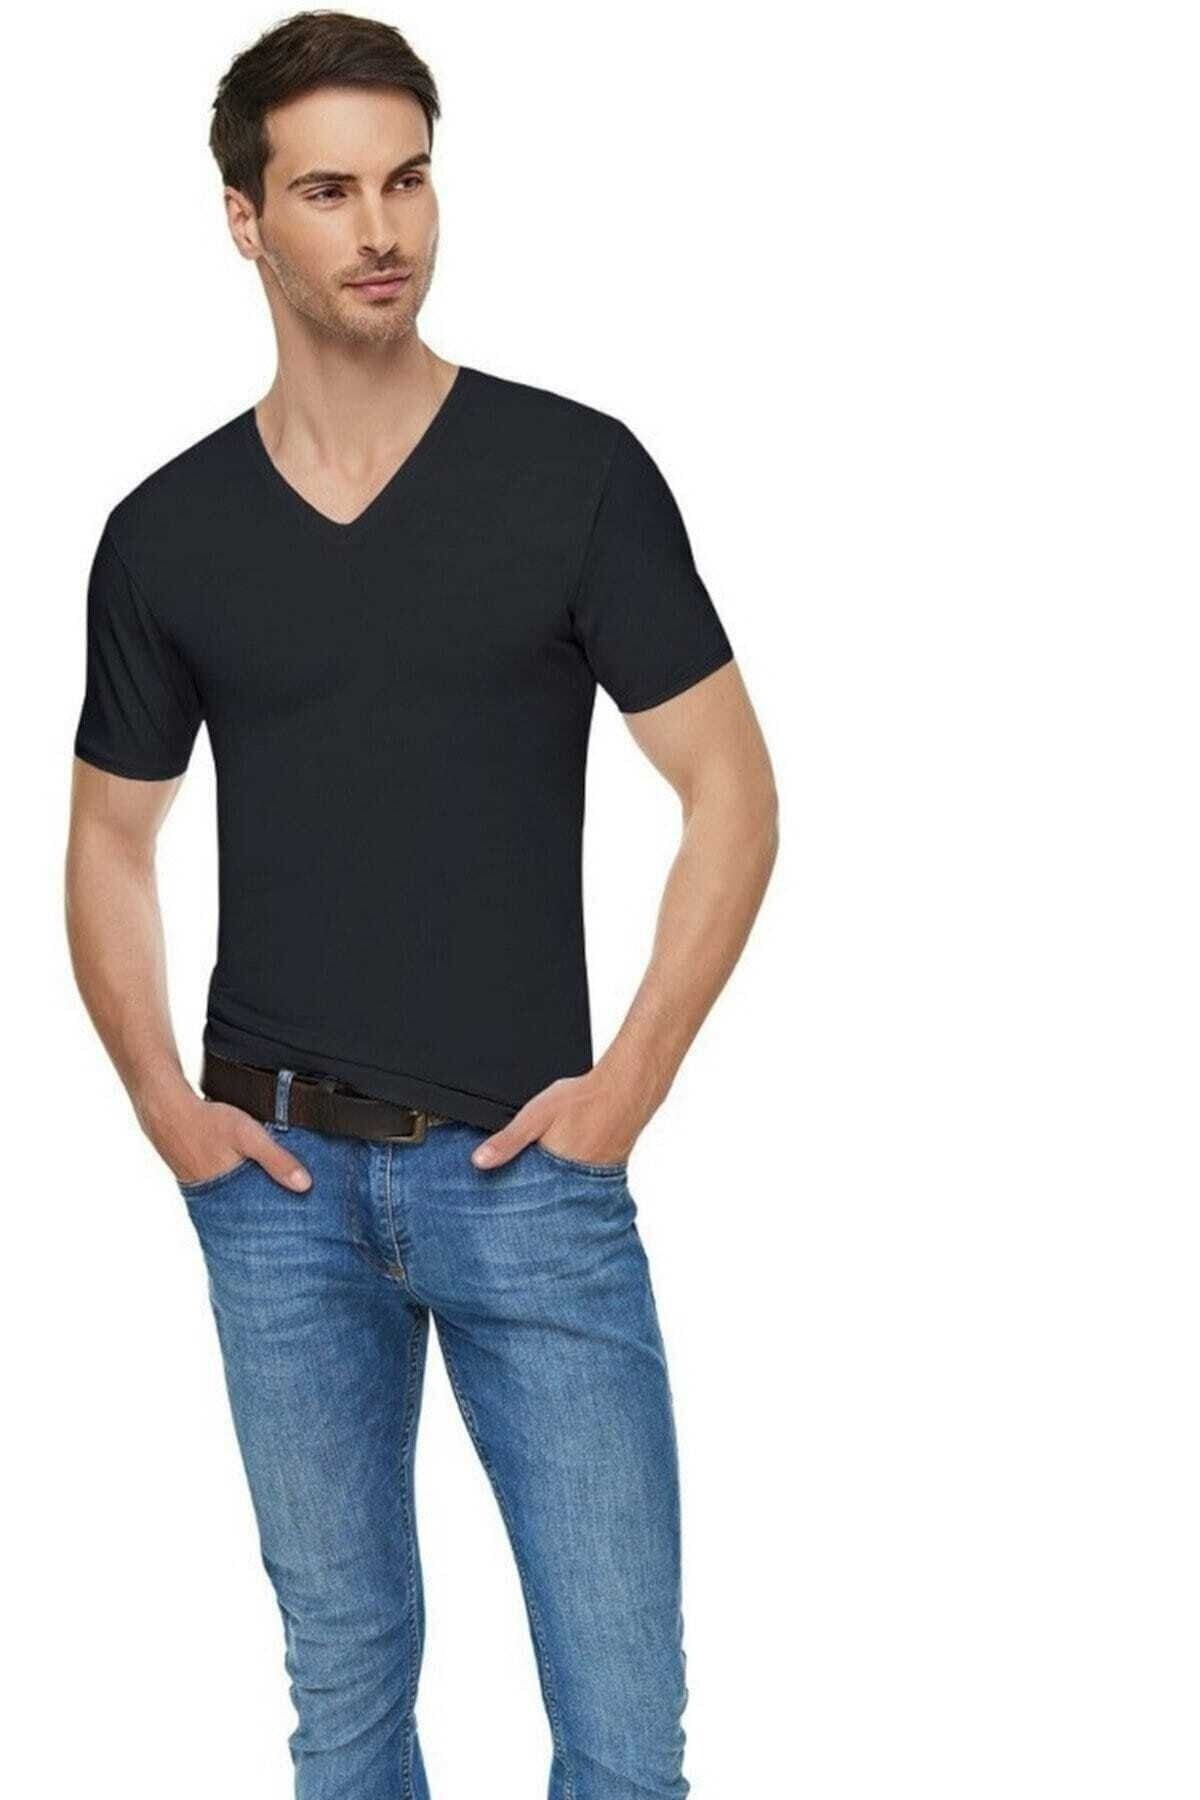 Tutku Elit Erkek Siyah Elastan Likralı V Yaka Kısa Kol Pamuklu T-shirt 6'lı 1303